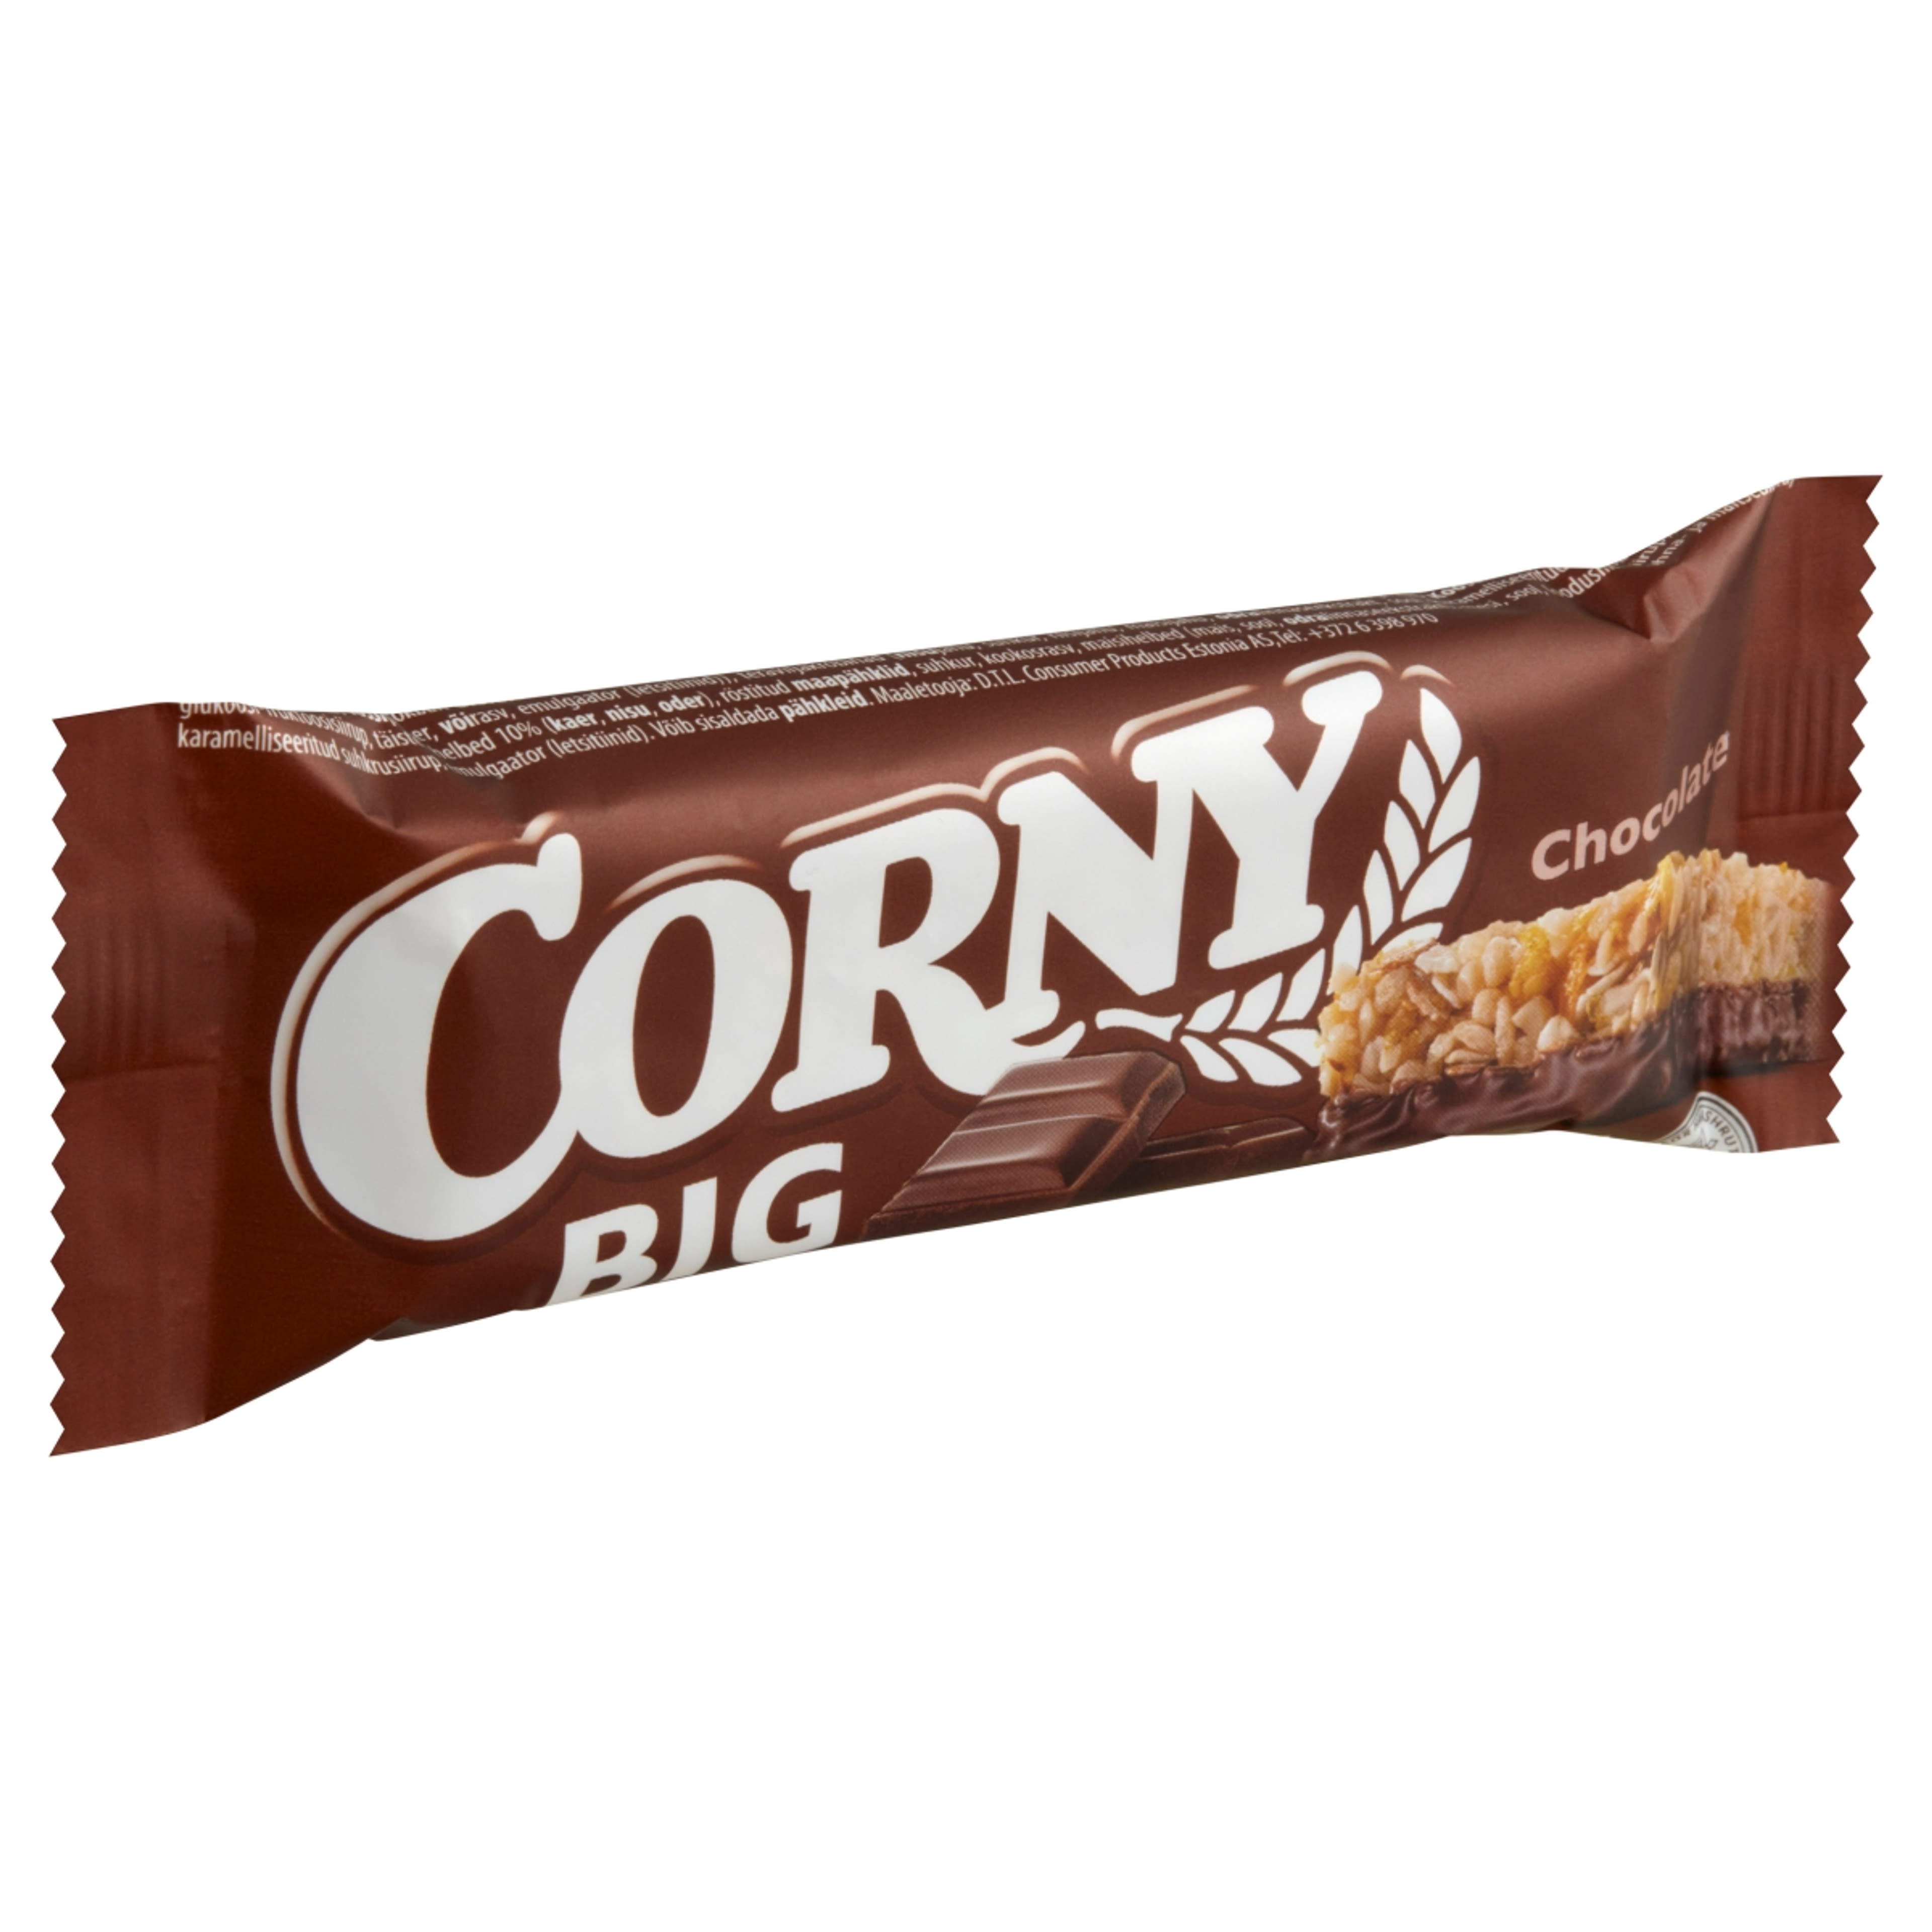 Corny big csokis müzli szelet - 50 g-1